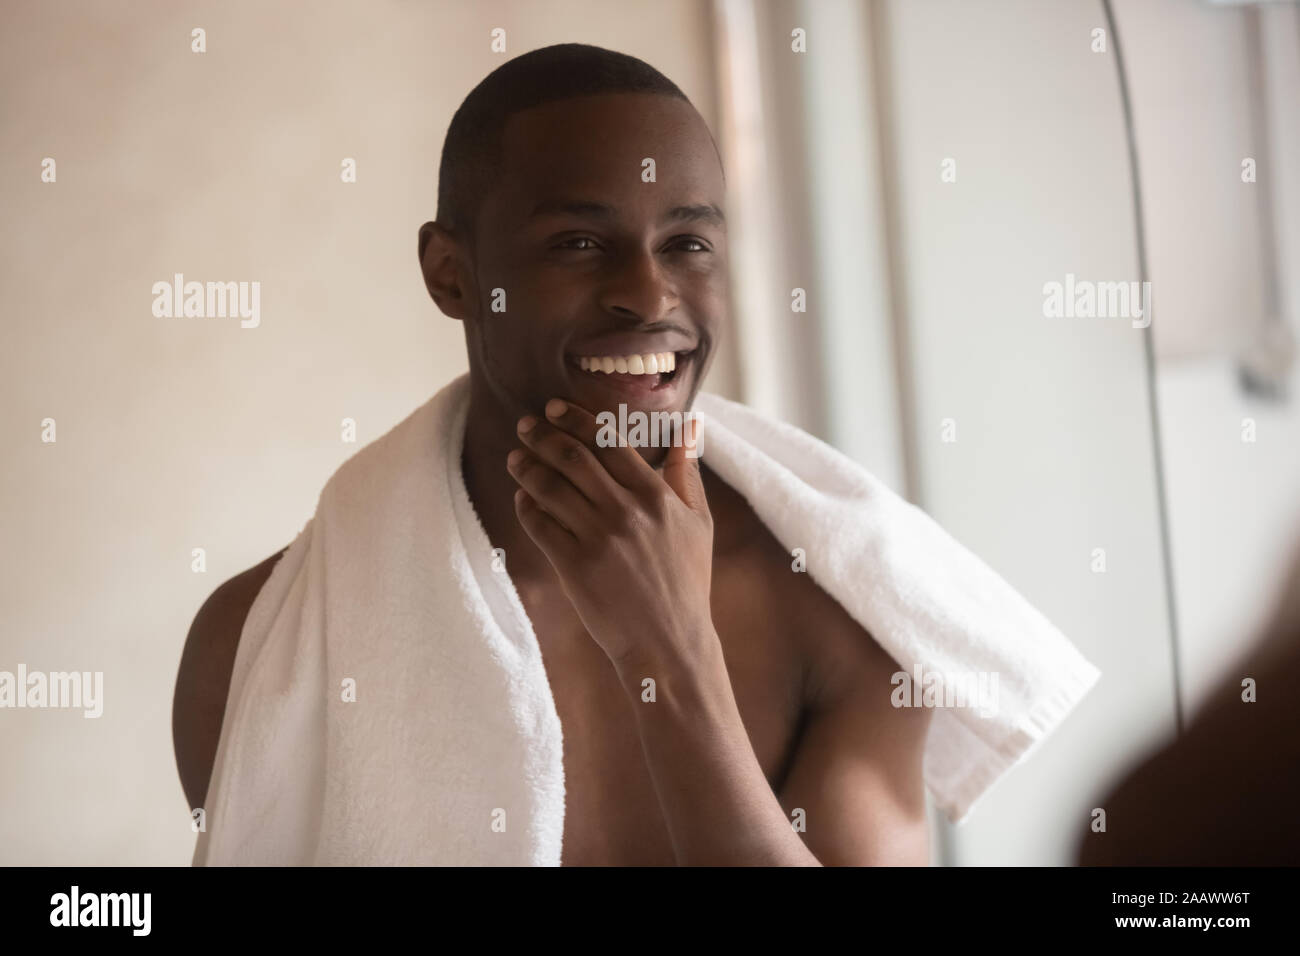 Smiling biracial man do daily facial routine in bathroom Stock Photo